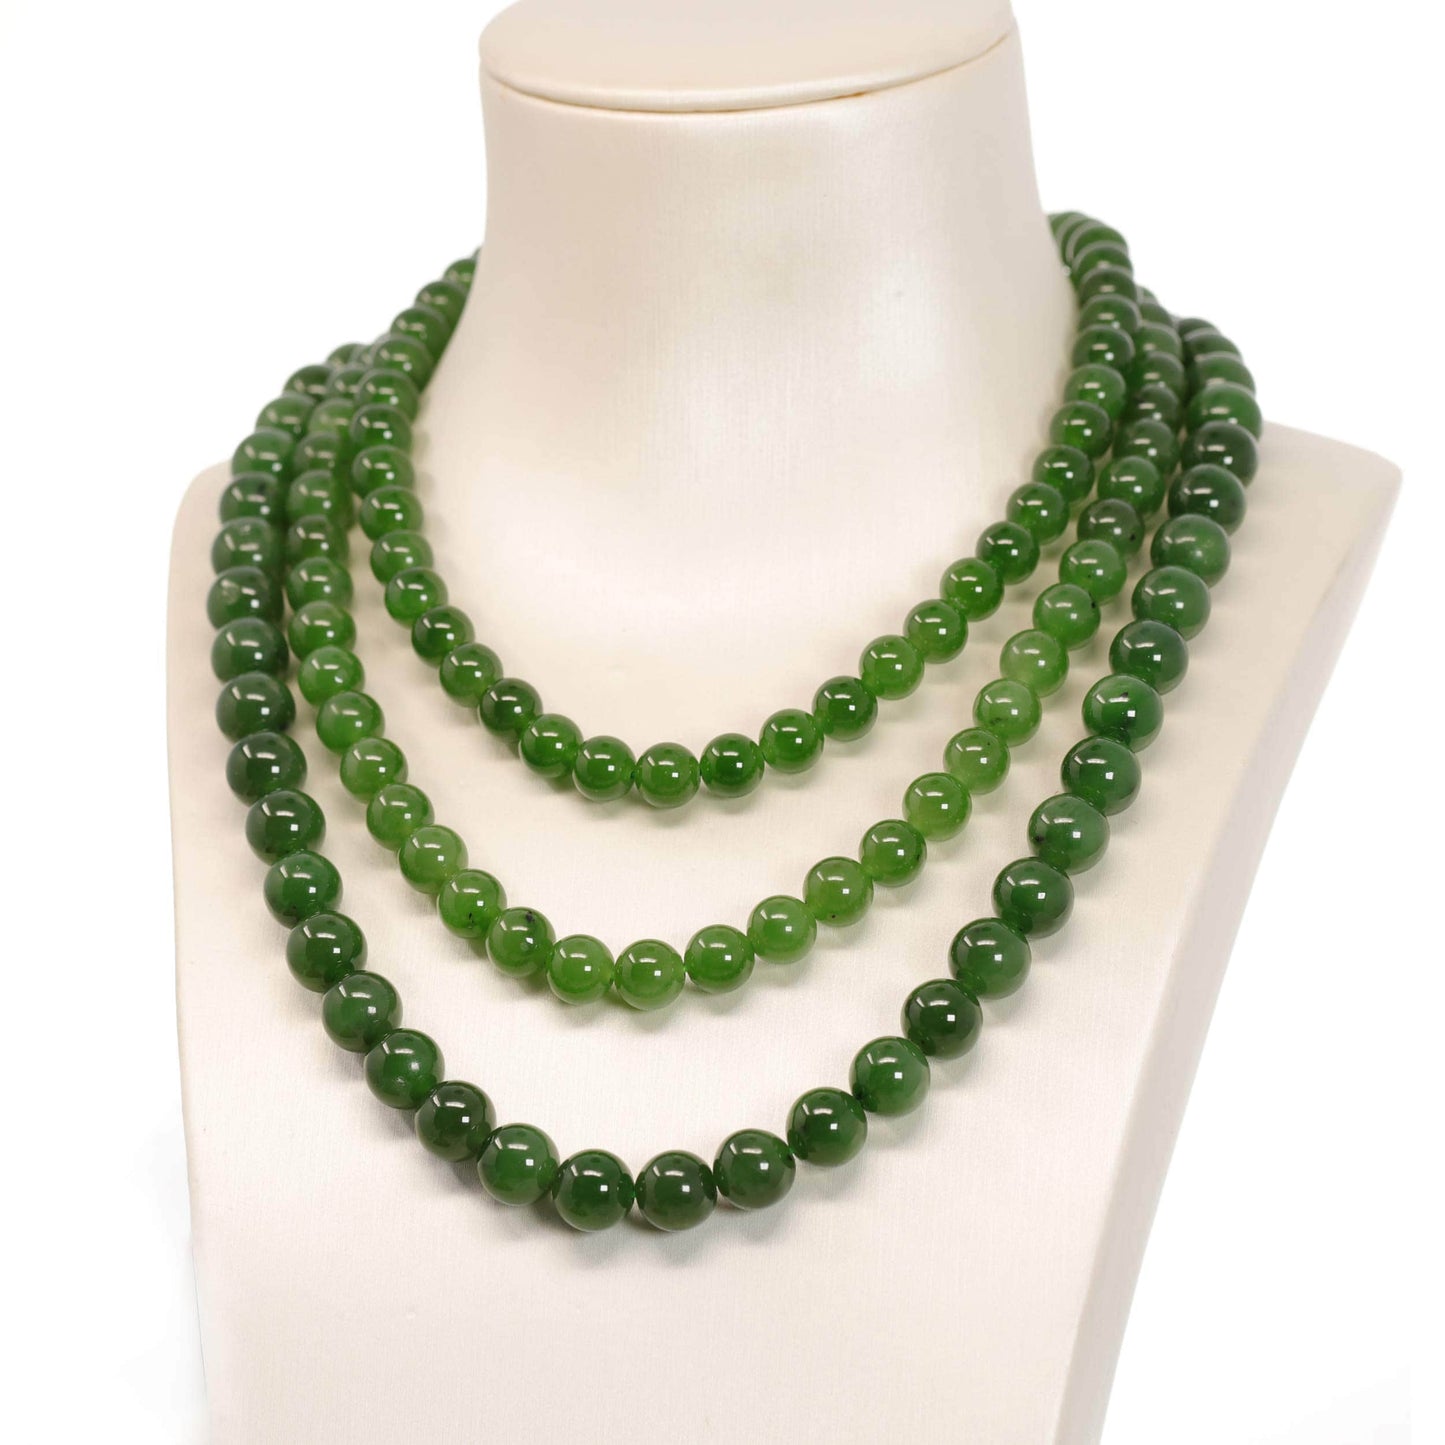  Genuine Green Nephrite Jade Round Beads Necklace, Real Jade Jewelry, Jade Education, .com